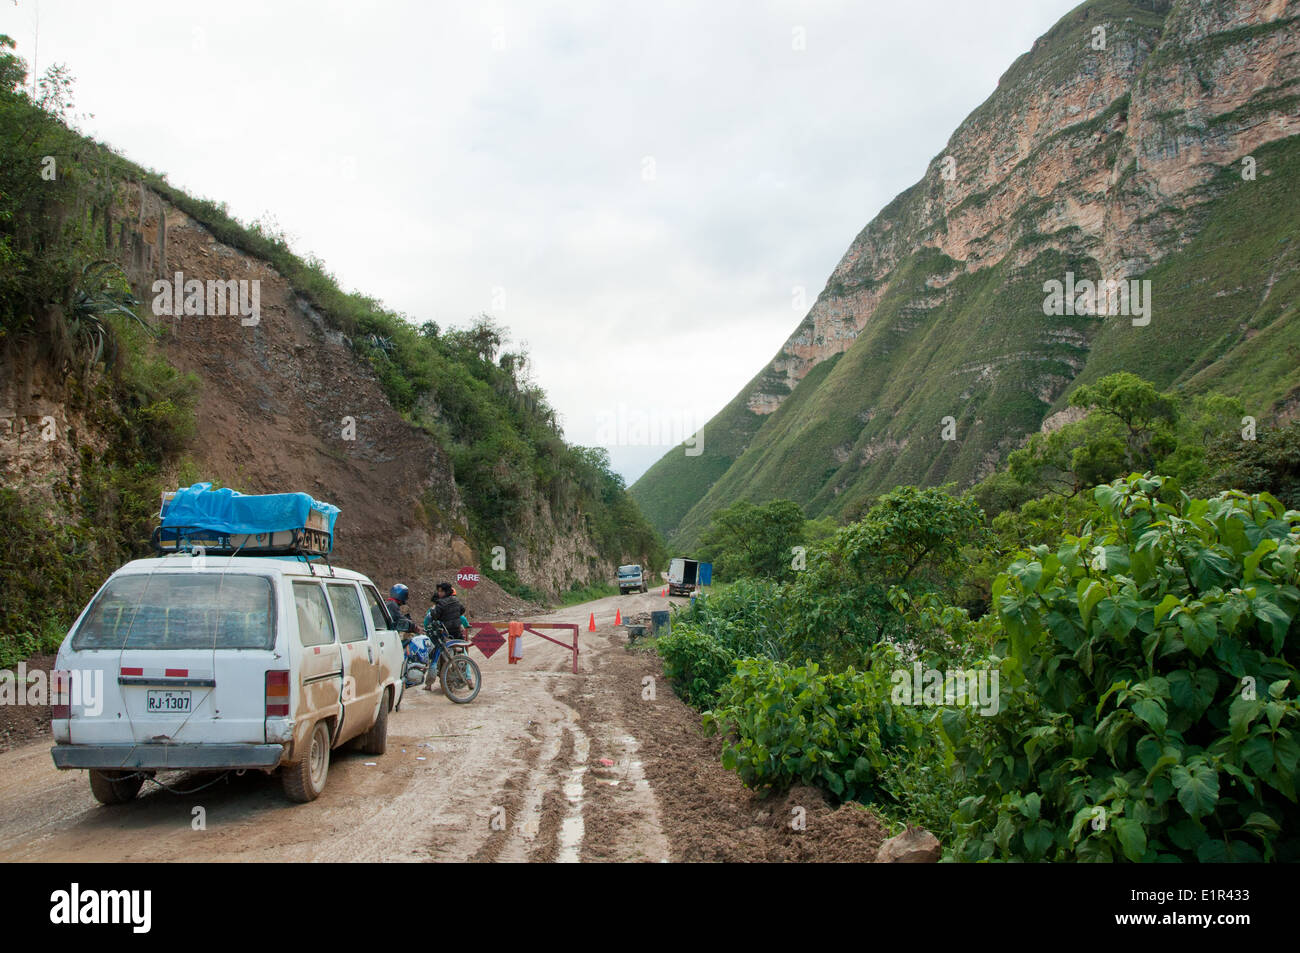 Fermeture de routes en raison des glissements de terrain sont fréquents pendant la saison des pluies dans la région montagneuse du nord du Pérou Amazonas Banque D'Images